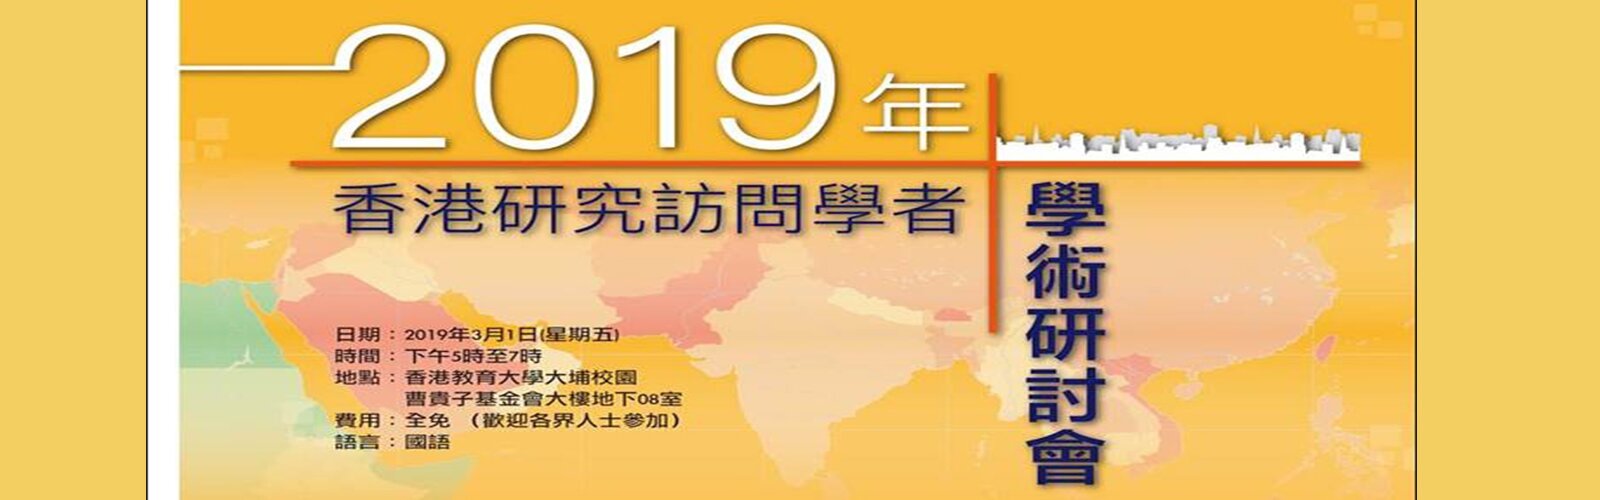 2019年香港研究访问学者学术研讨会